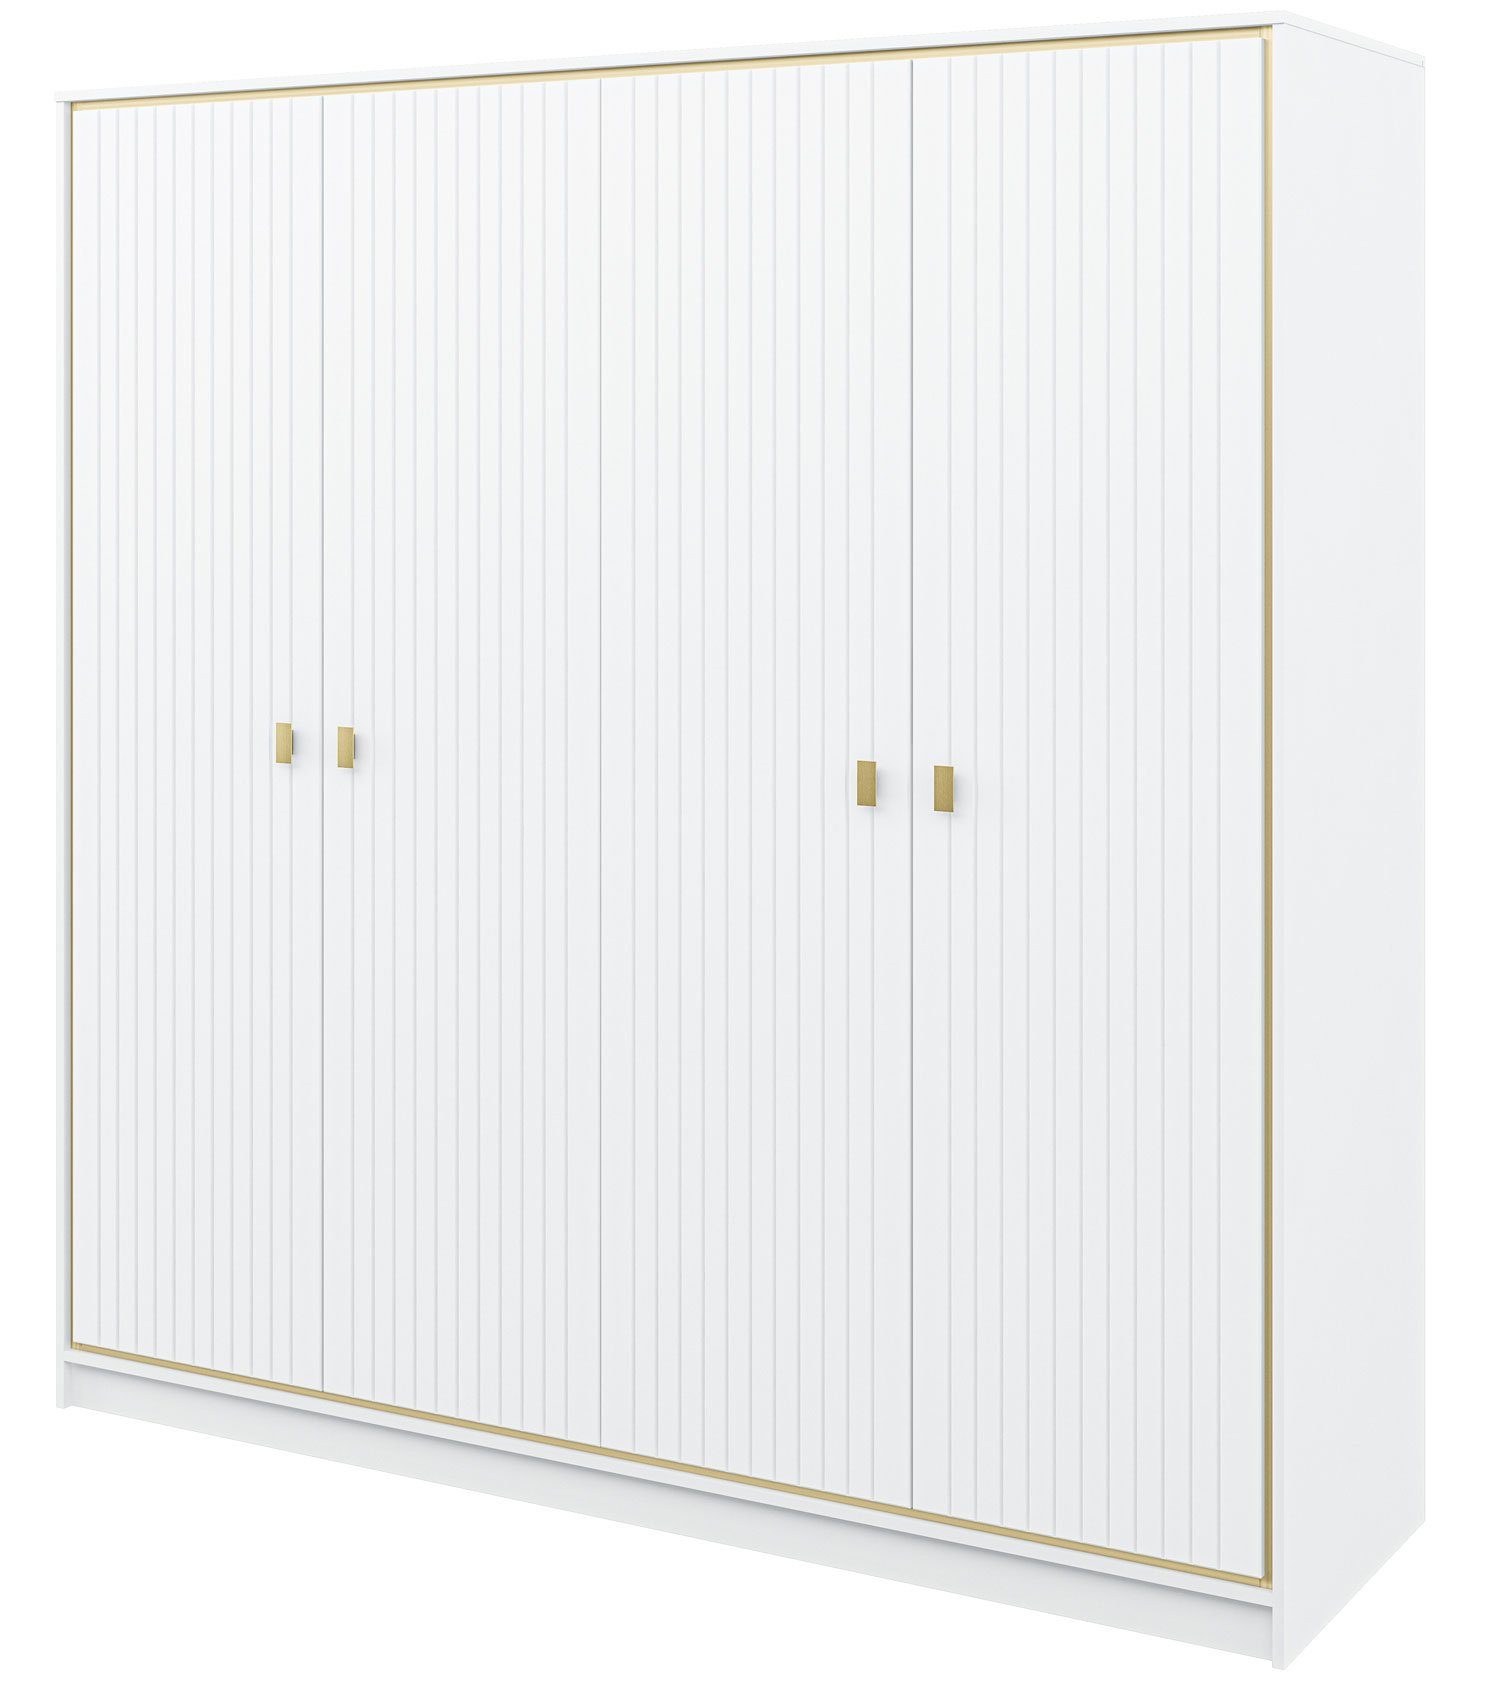 Feldmann-Wohnen Kleiderschrank Luxor 215x62x220cm polarweiß Hochglanz Gold